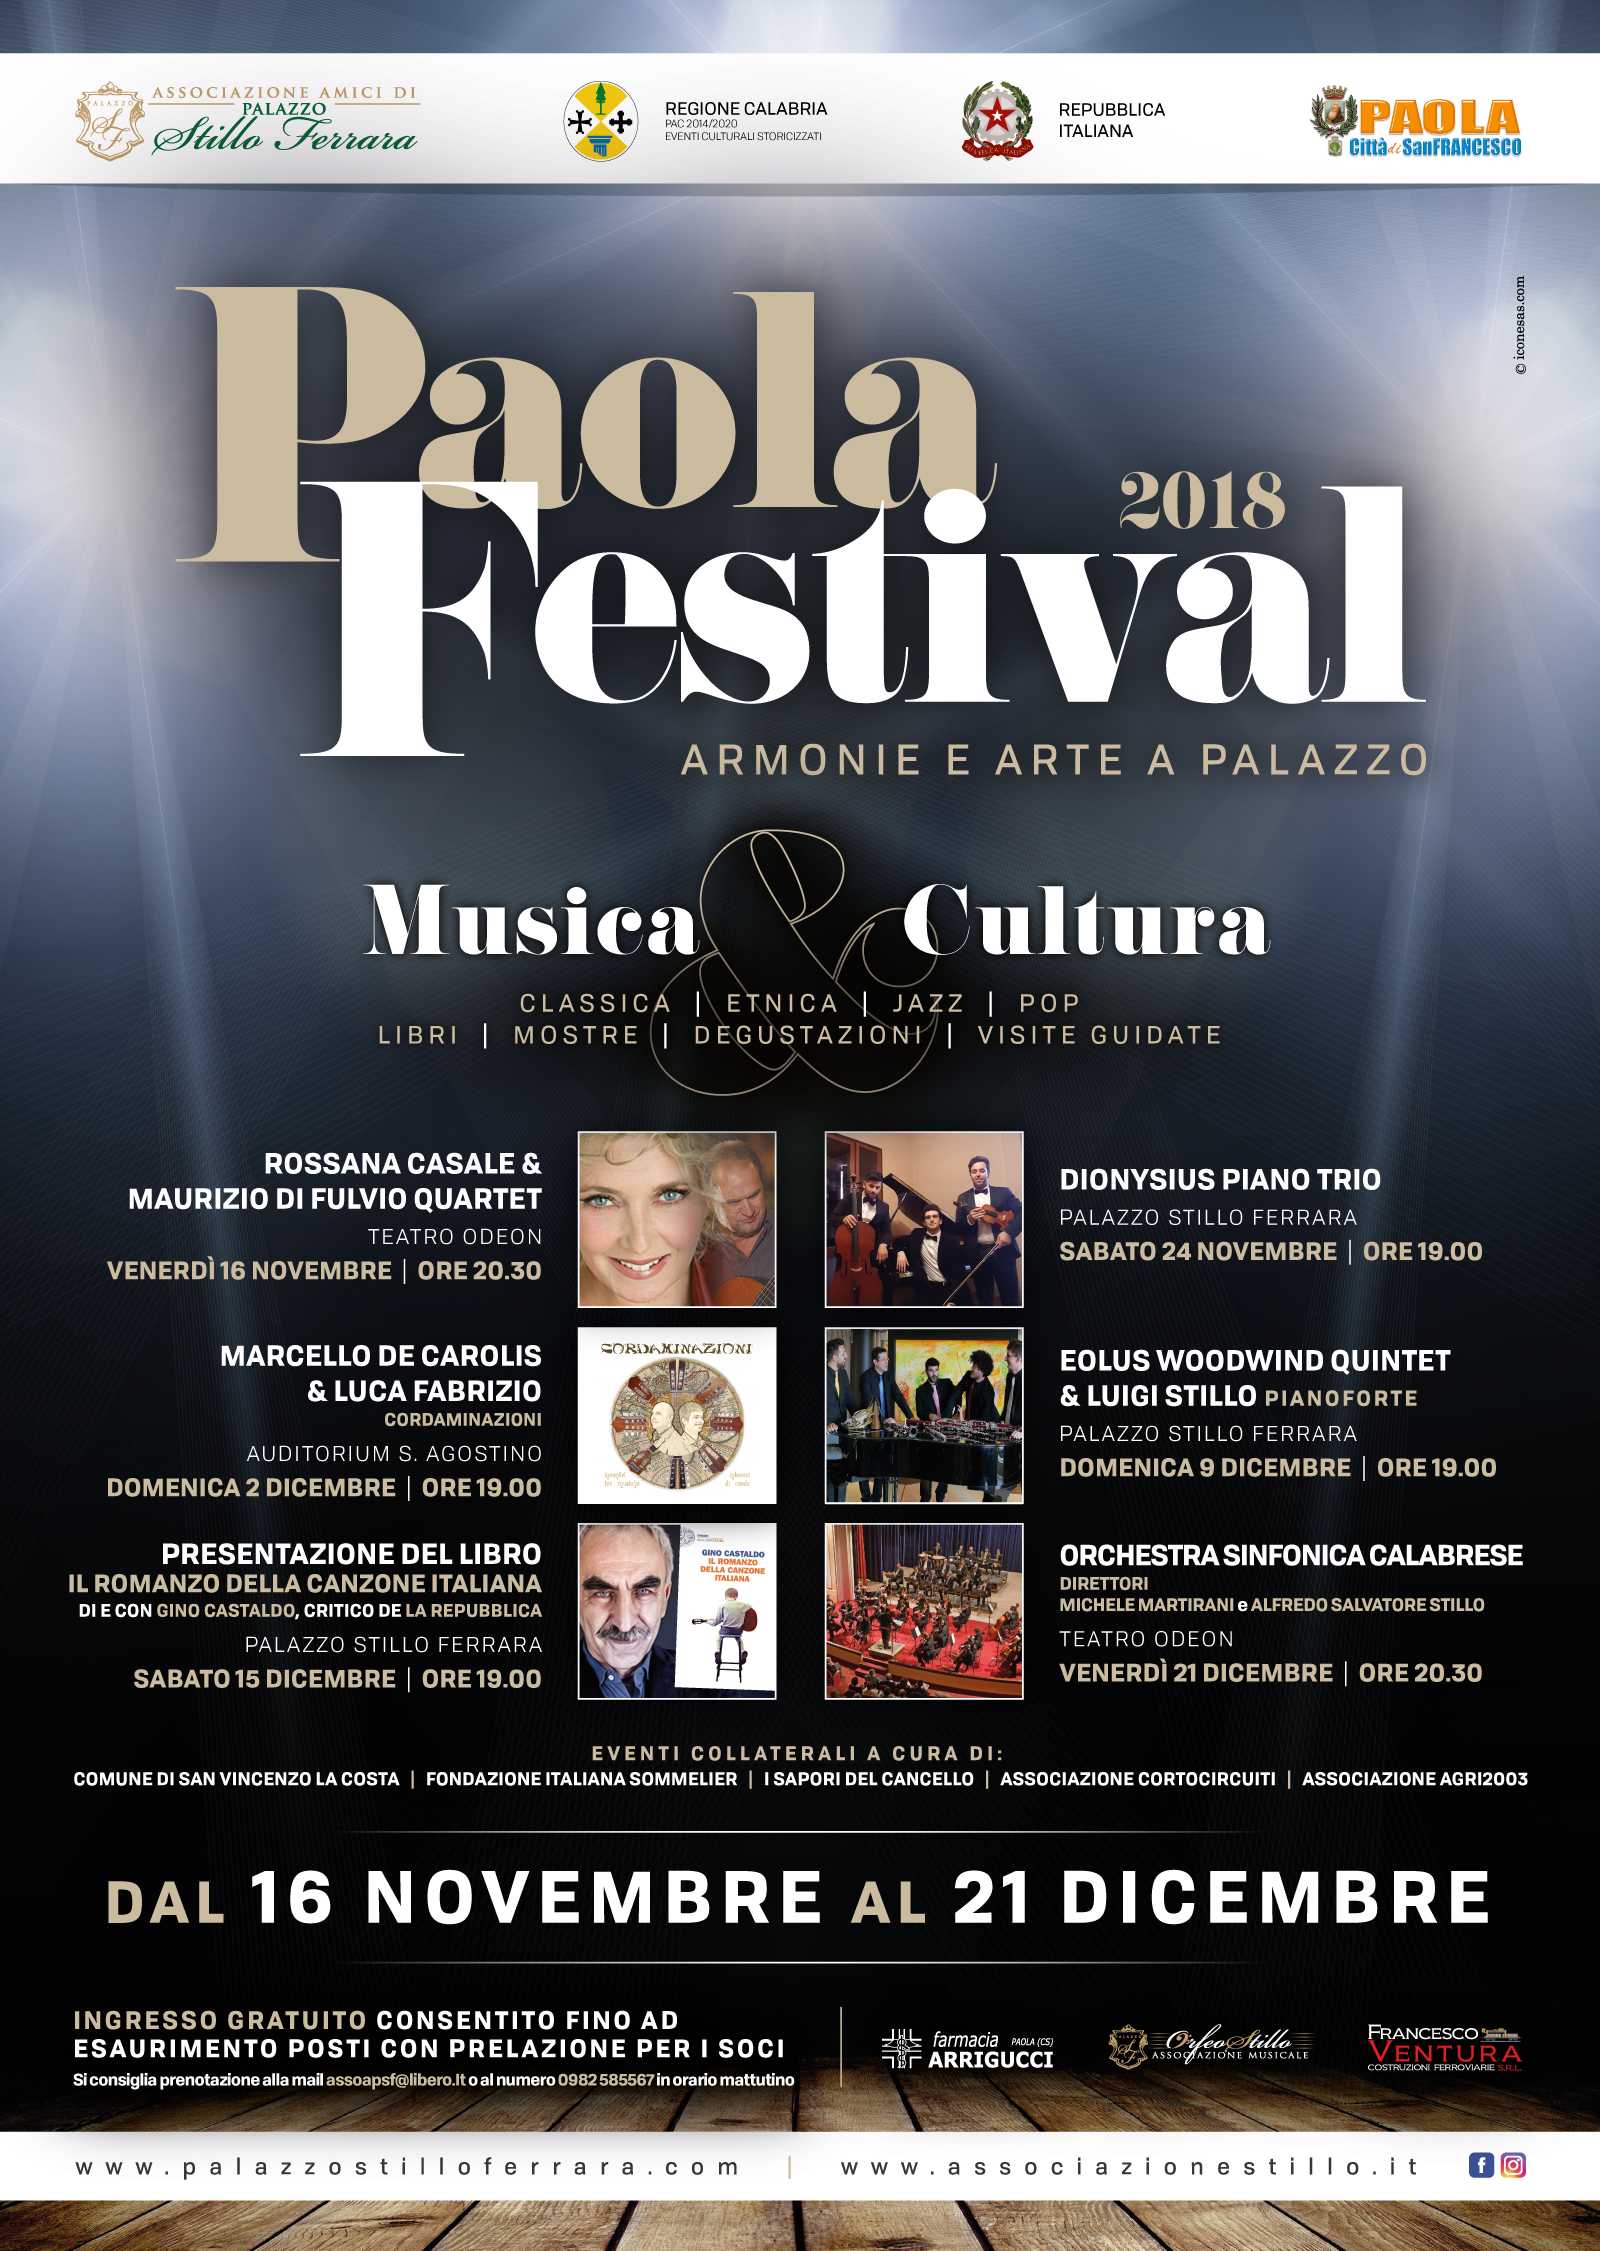 Successo per il concerto inaugurale del Paola festival 2018 affidato alla splendida Rossana Casale